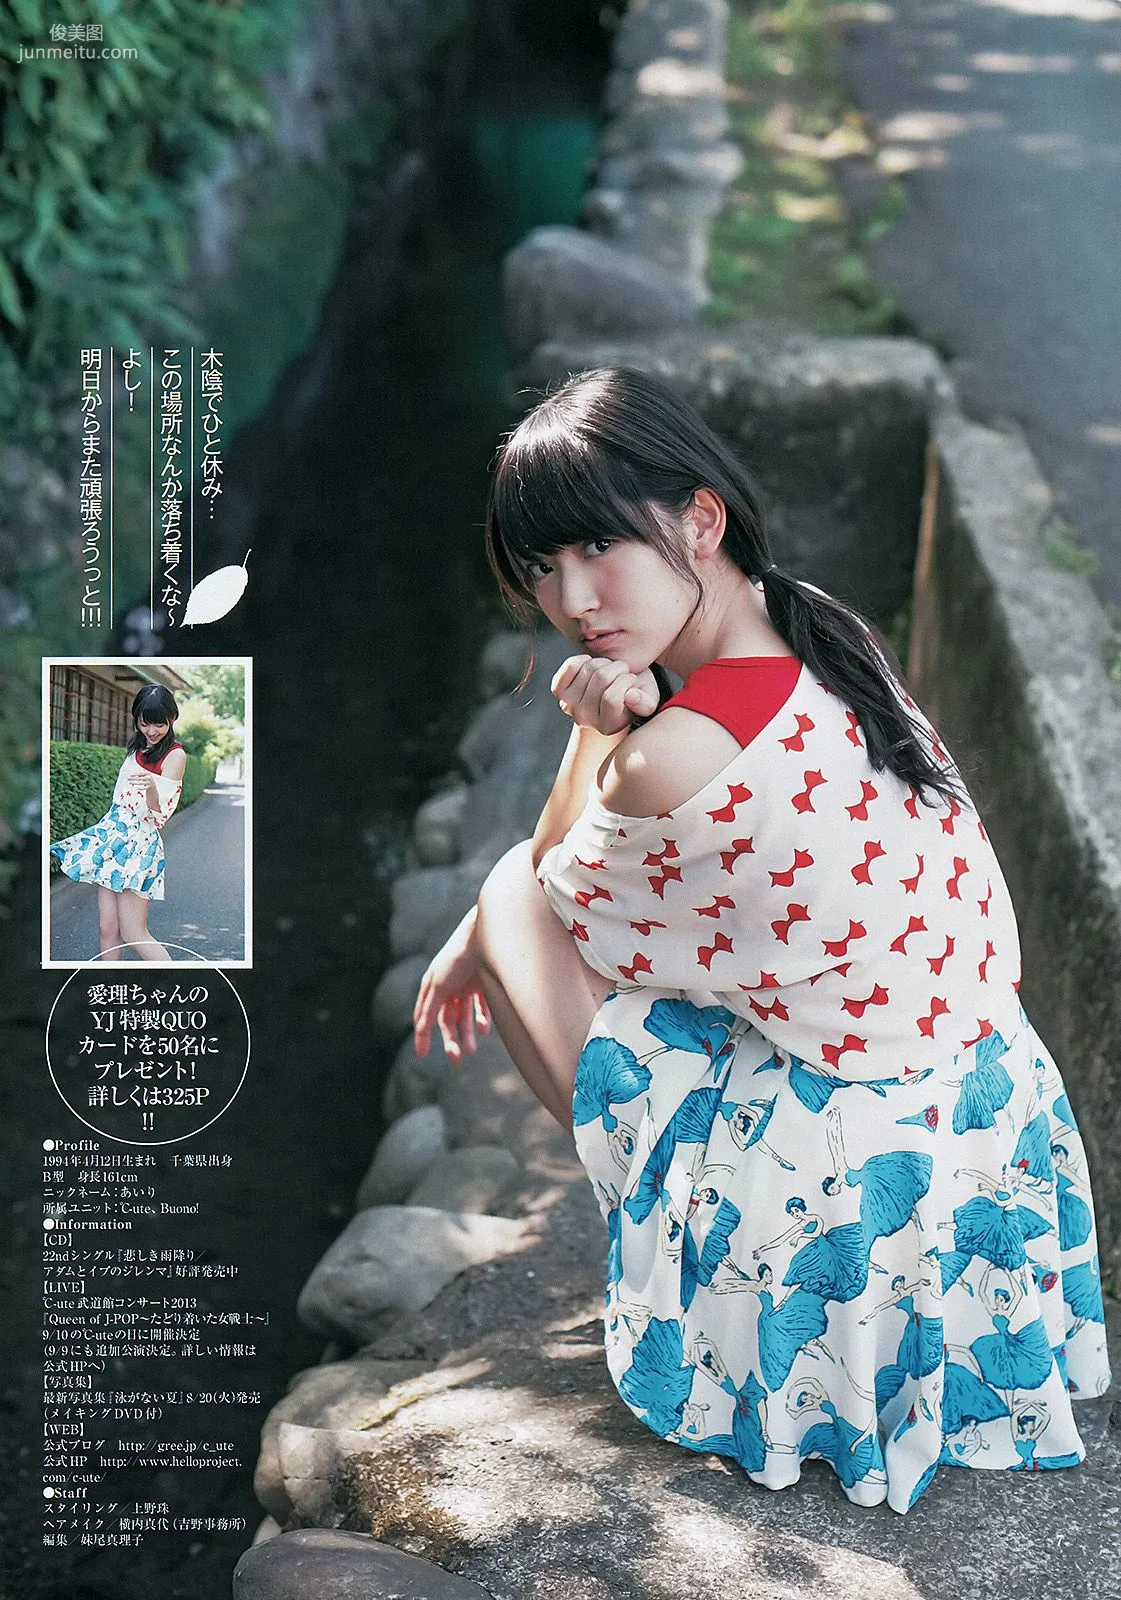 鈴木愛理 小島瑠璃子 ベイビーレイズ [週刊ヤングジャンプ] 2013年No.33 写真杂志8